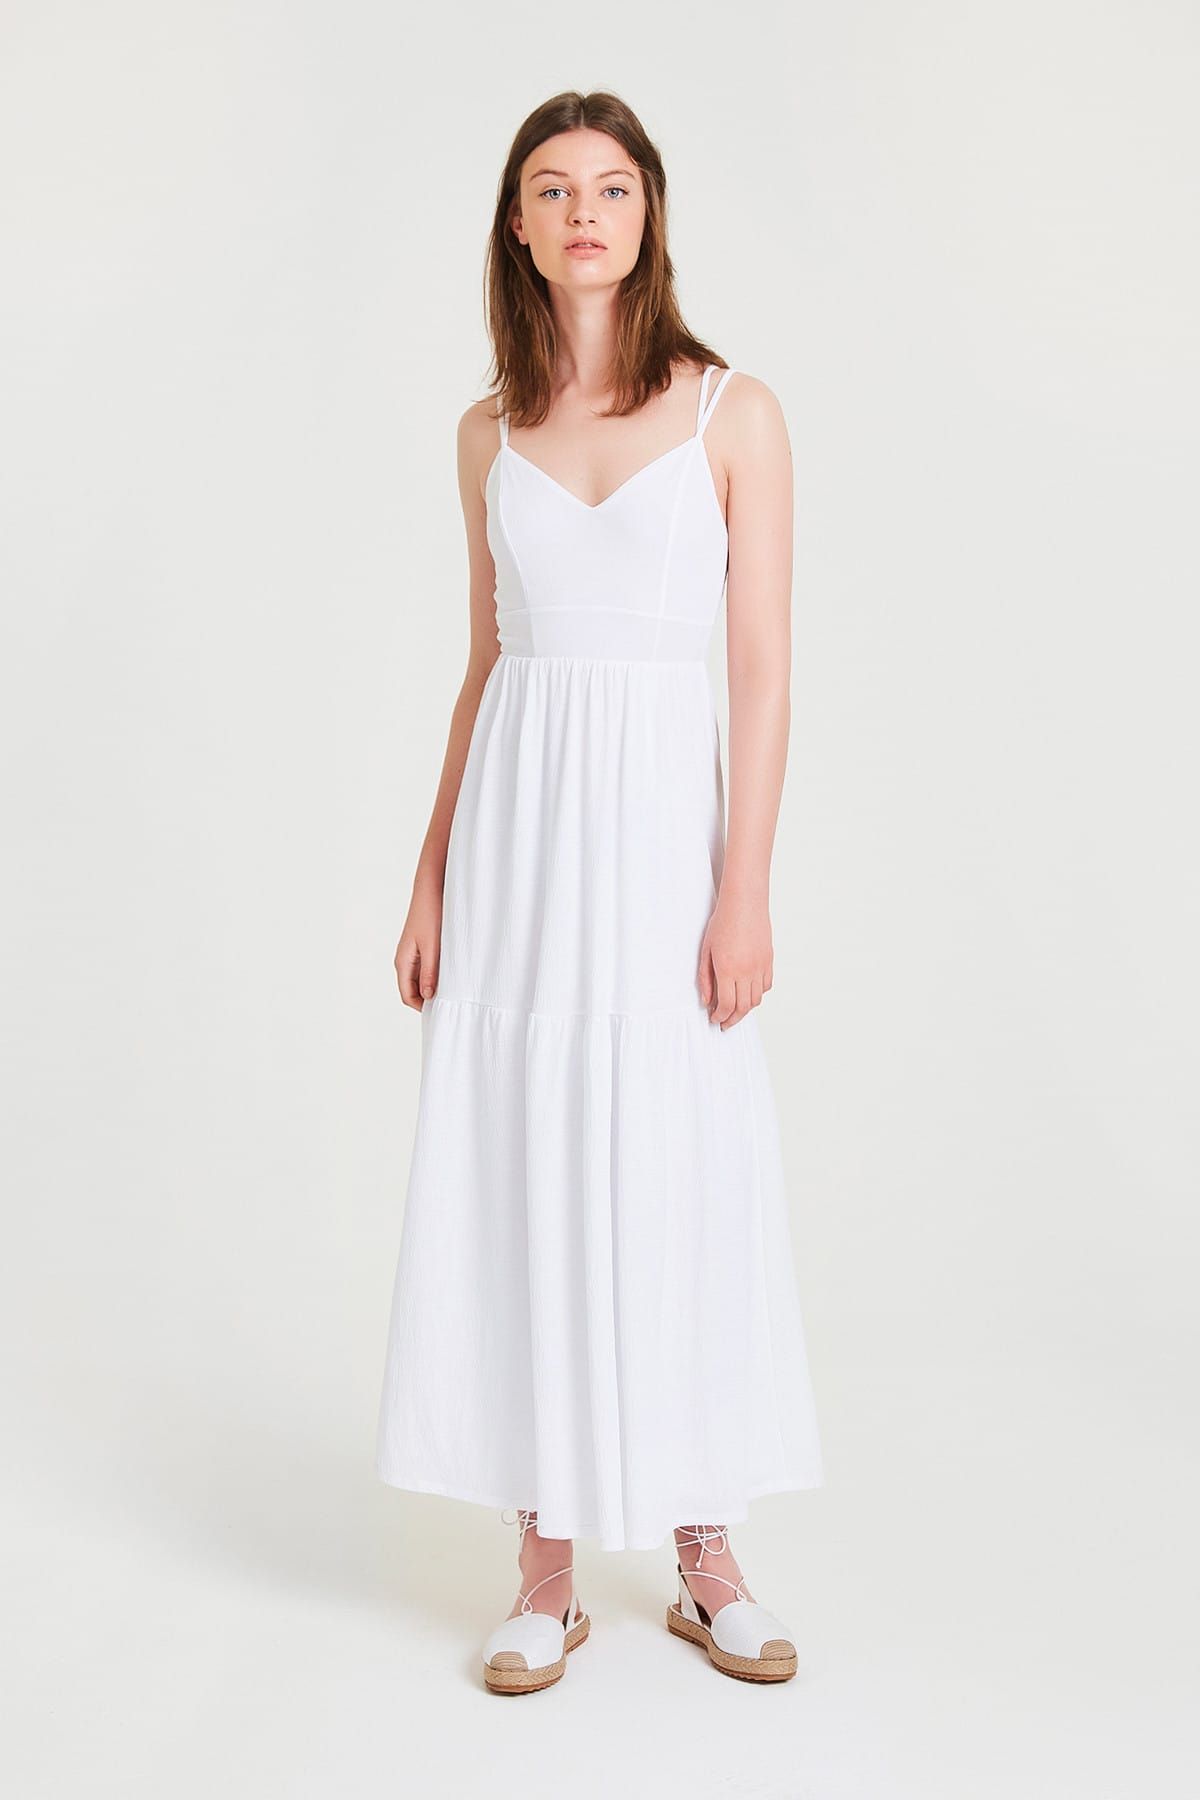 closedbrands Kadın Beyaz Elbise